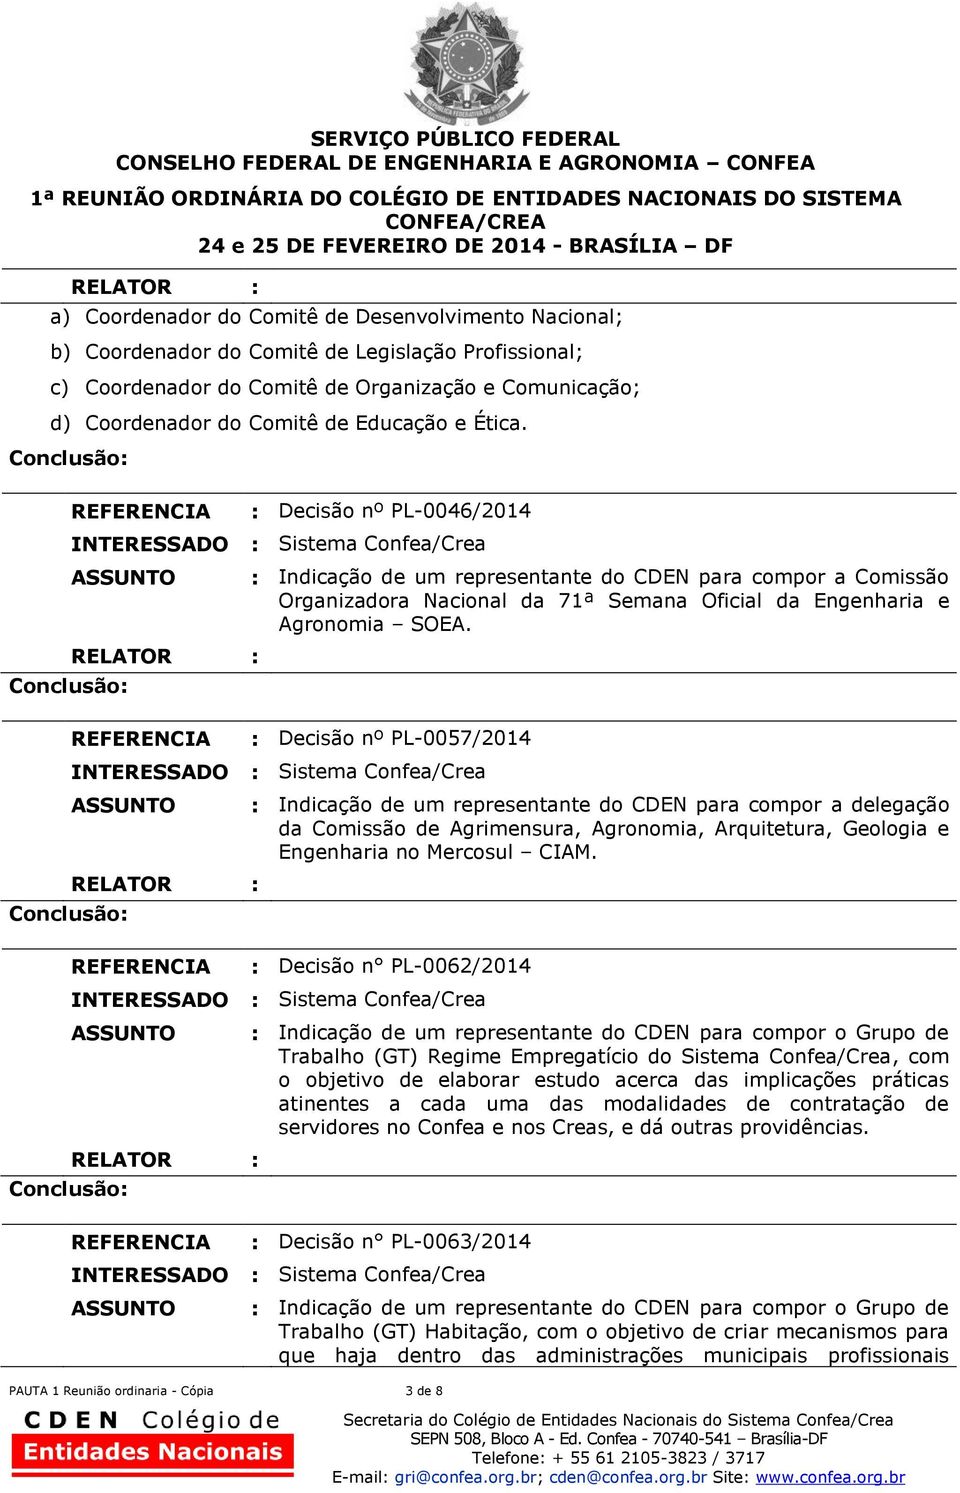 : Decisão nº PL-0057/2014 : Indicação de um representante do CDEN para compor a delegação da Comissão de Agrimensura, Agronomia, Arquitetura, Geologia e Engenharia no Mercosul CIAM.